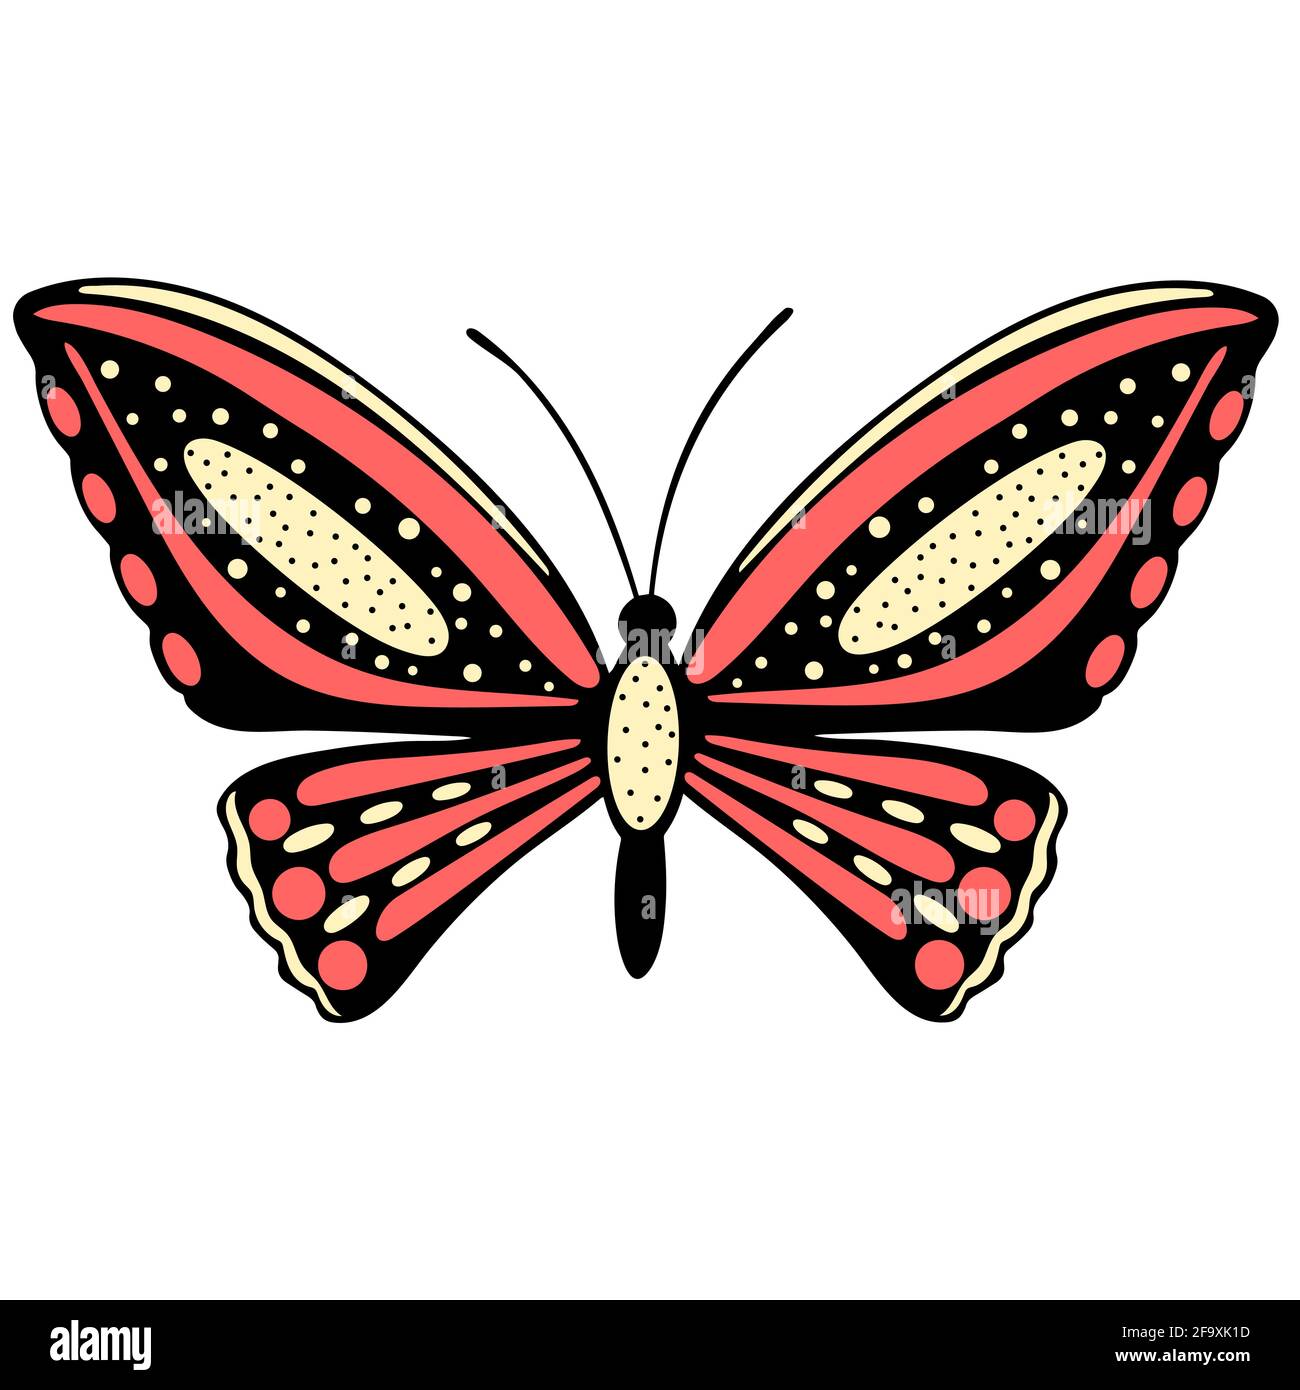 Der Schmetterling ist rot. Eine schöne Motte mit Flecken. Fliegendes Insekt mit farbigen Flügeln.Vektor. Stock Vektor